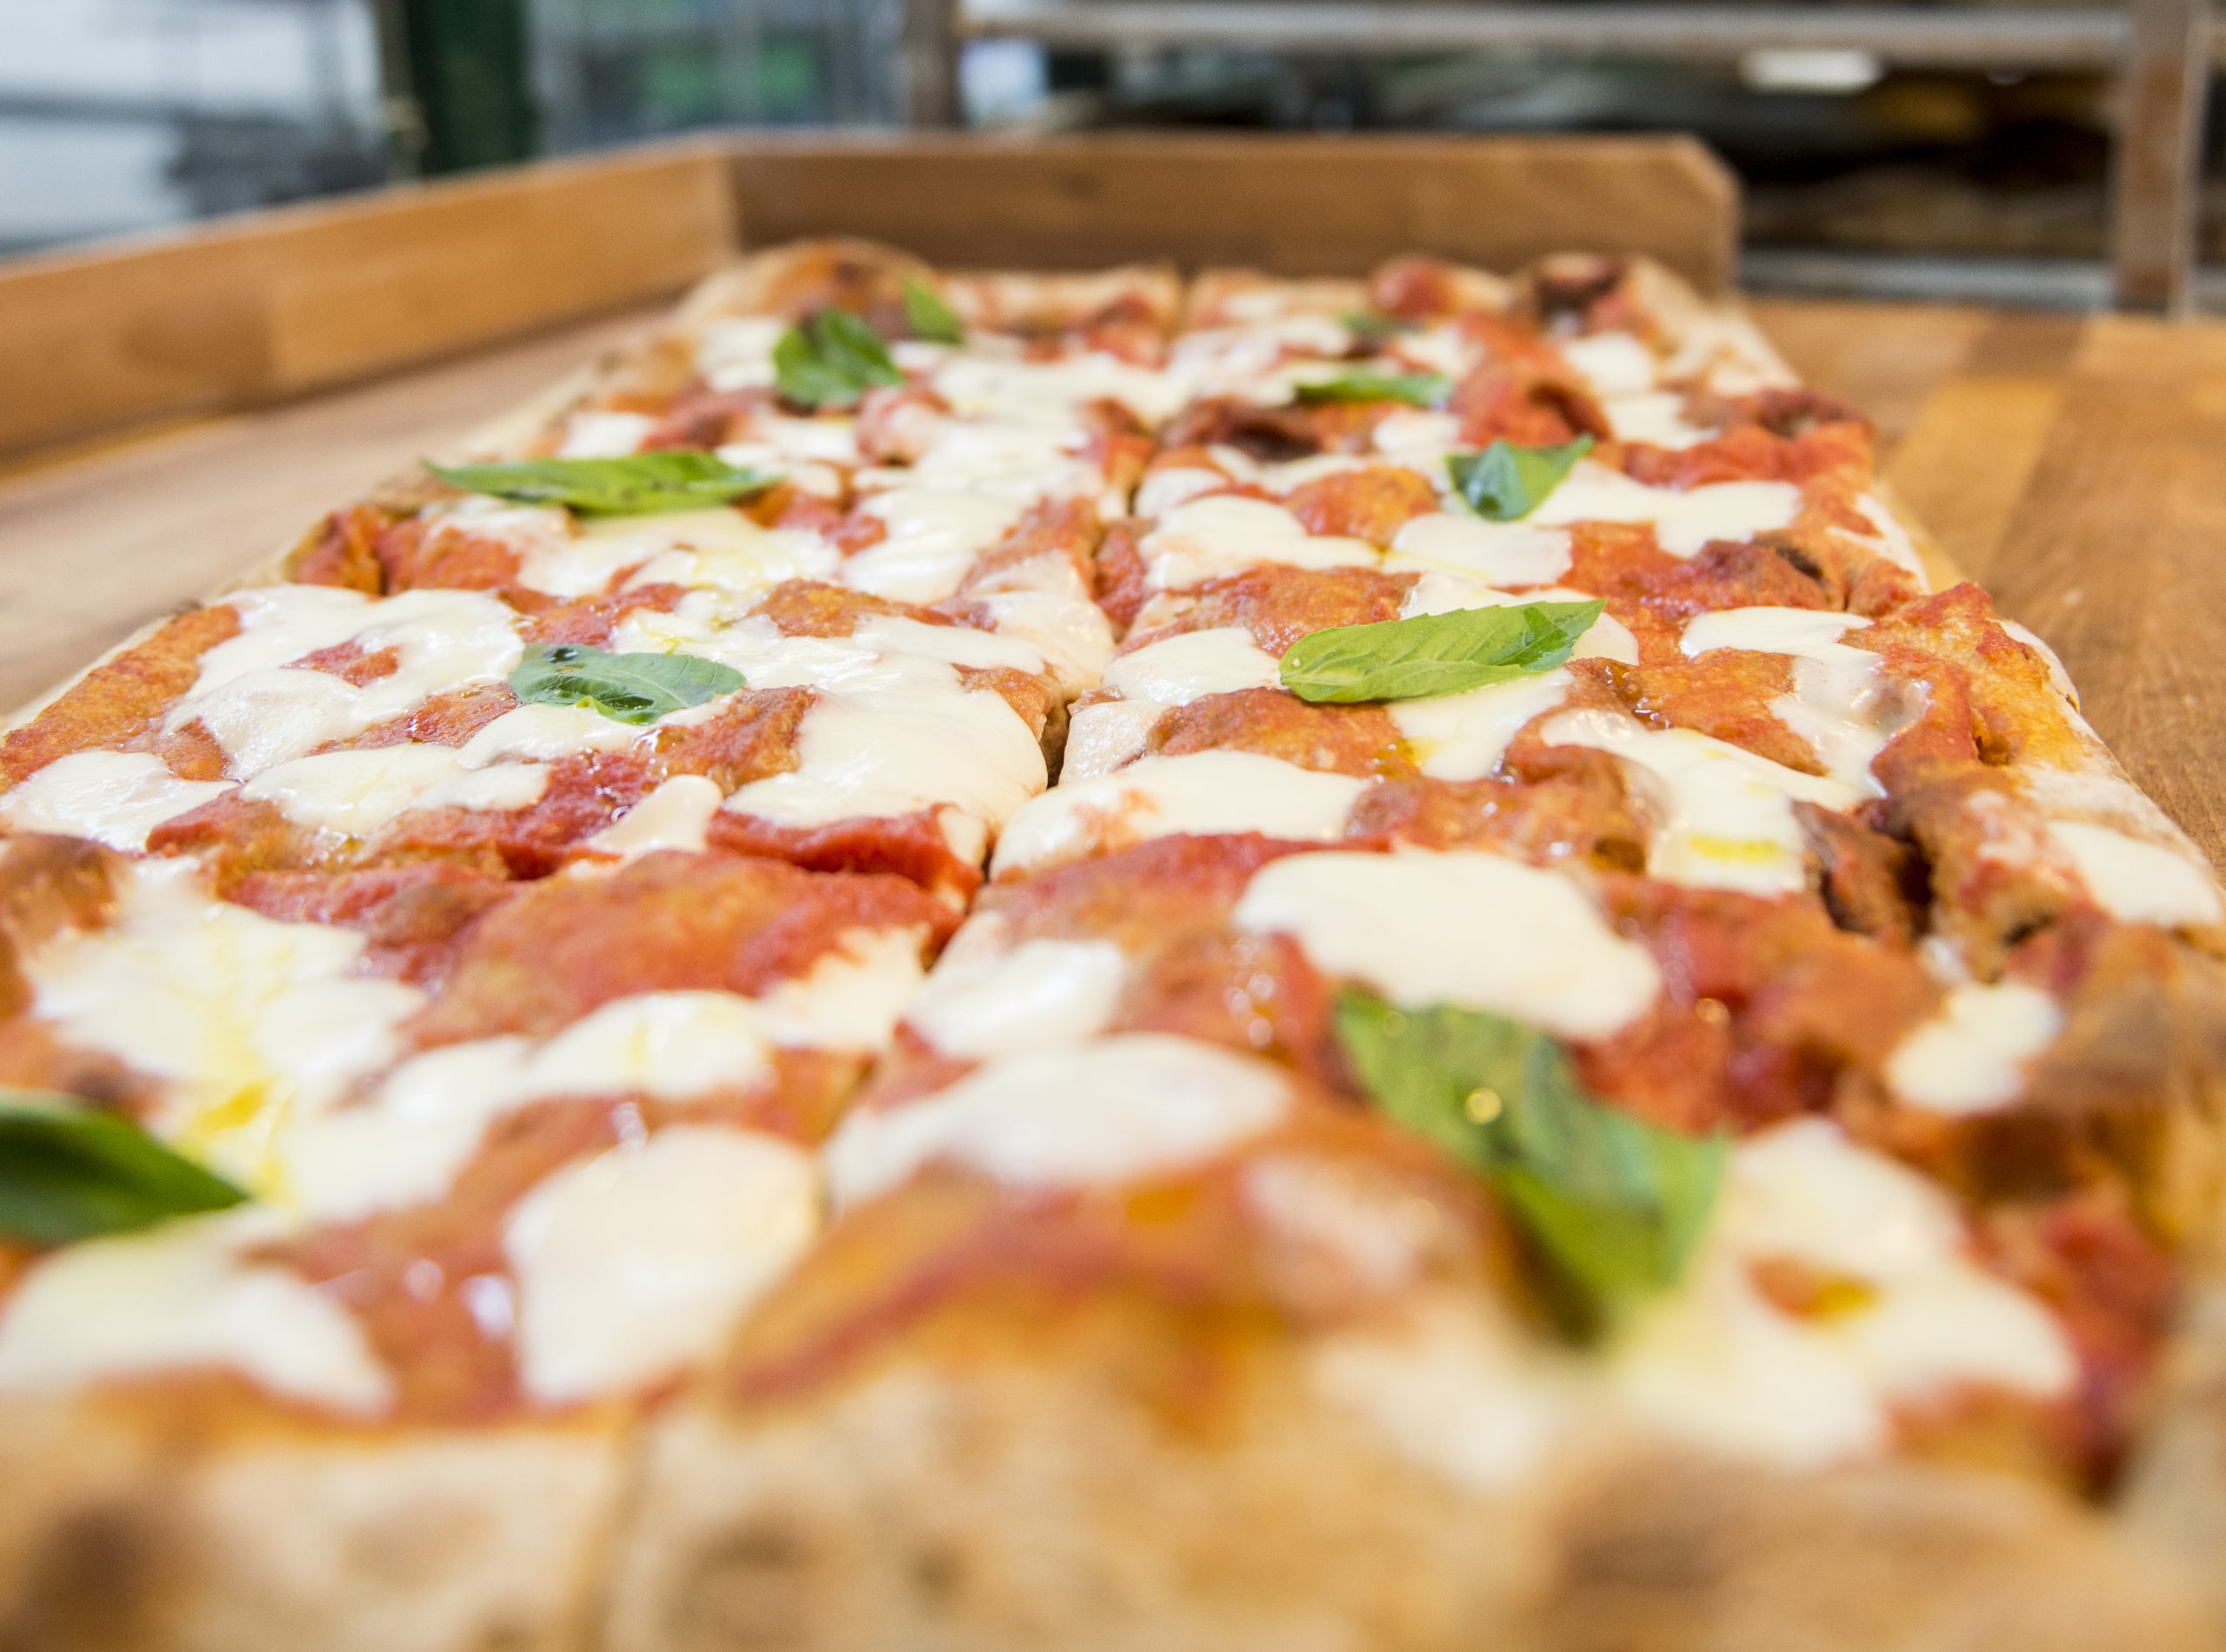 Pizza bei Sironi La Pizza, das Lokal hat einen Lieferservice und Takeaway in Berlin aufgebaut.